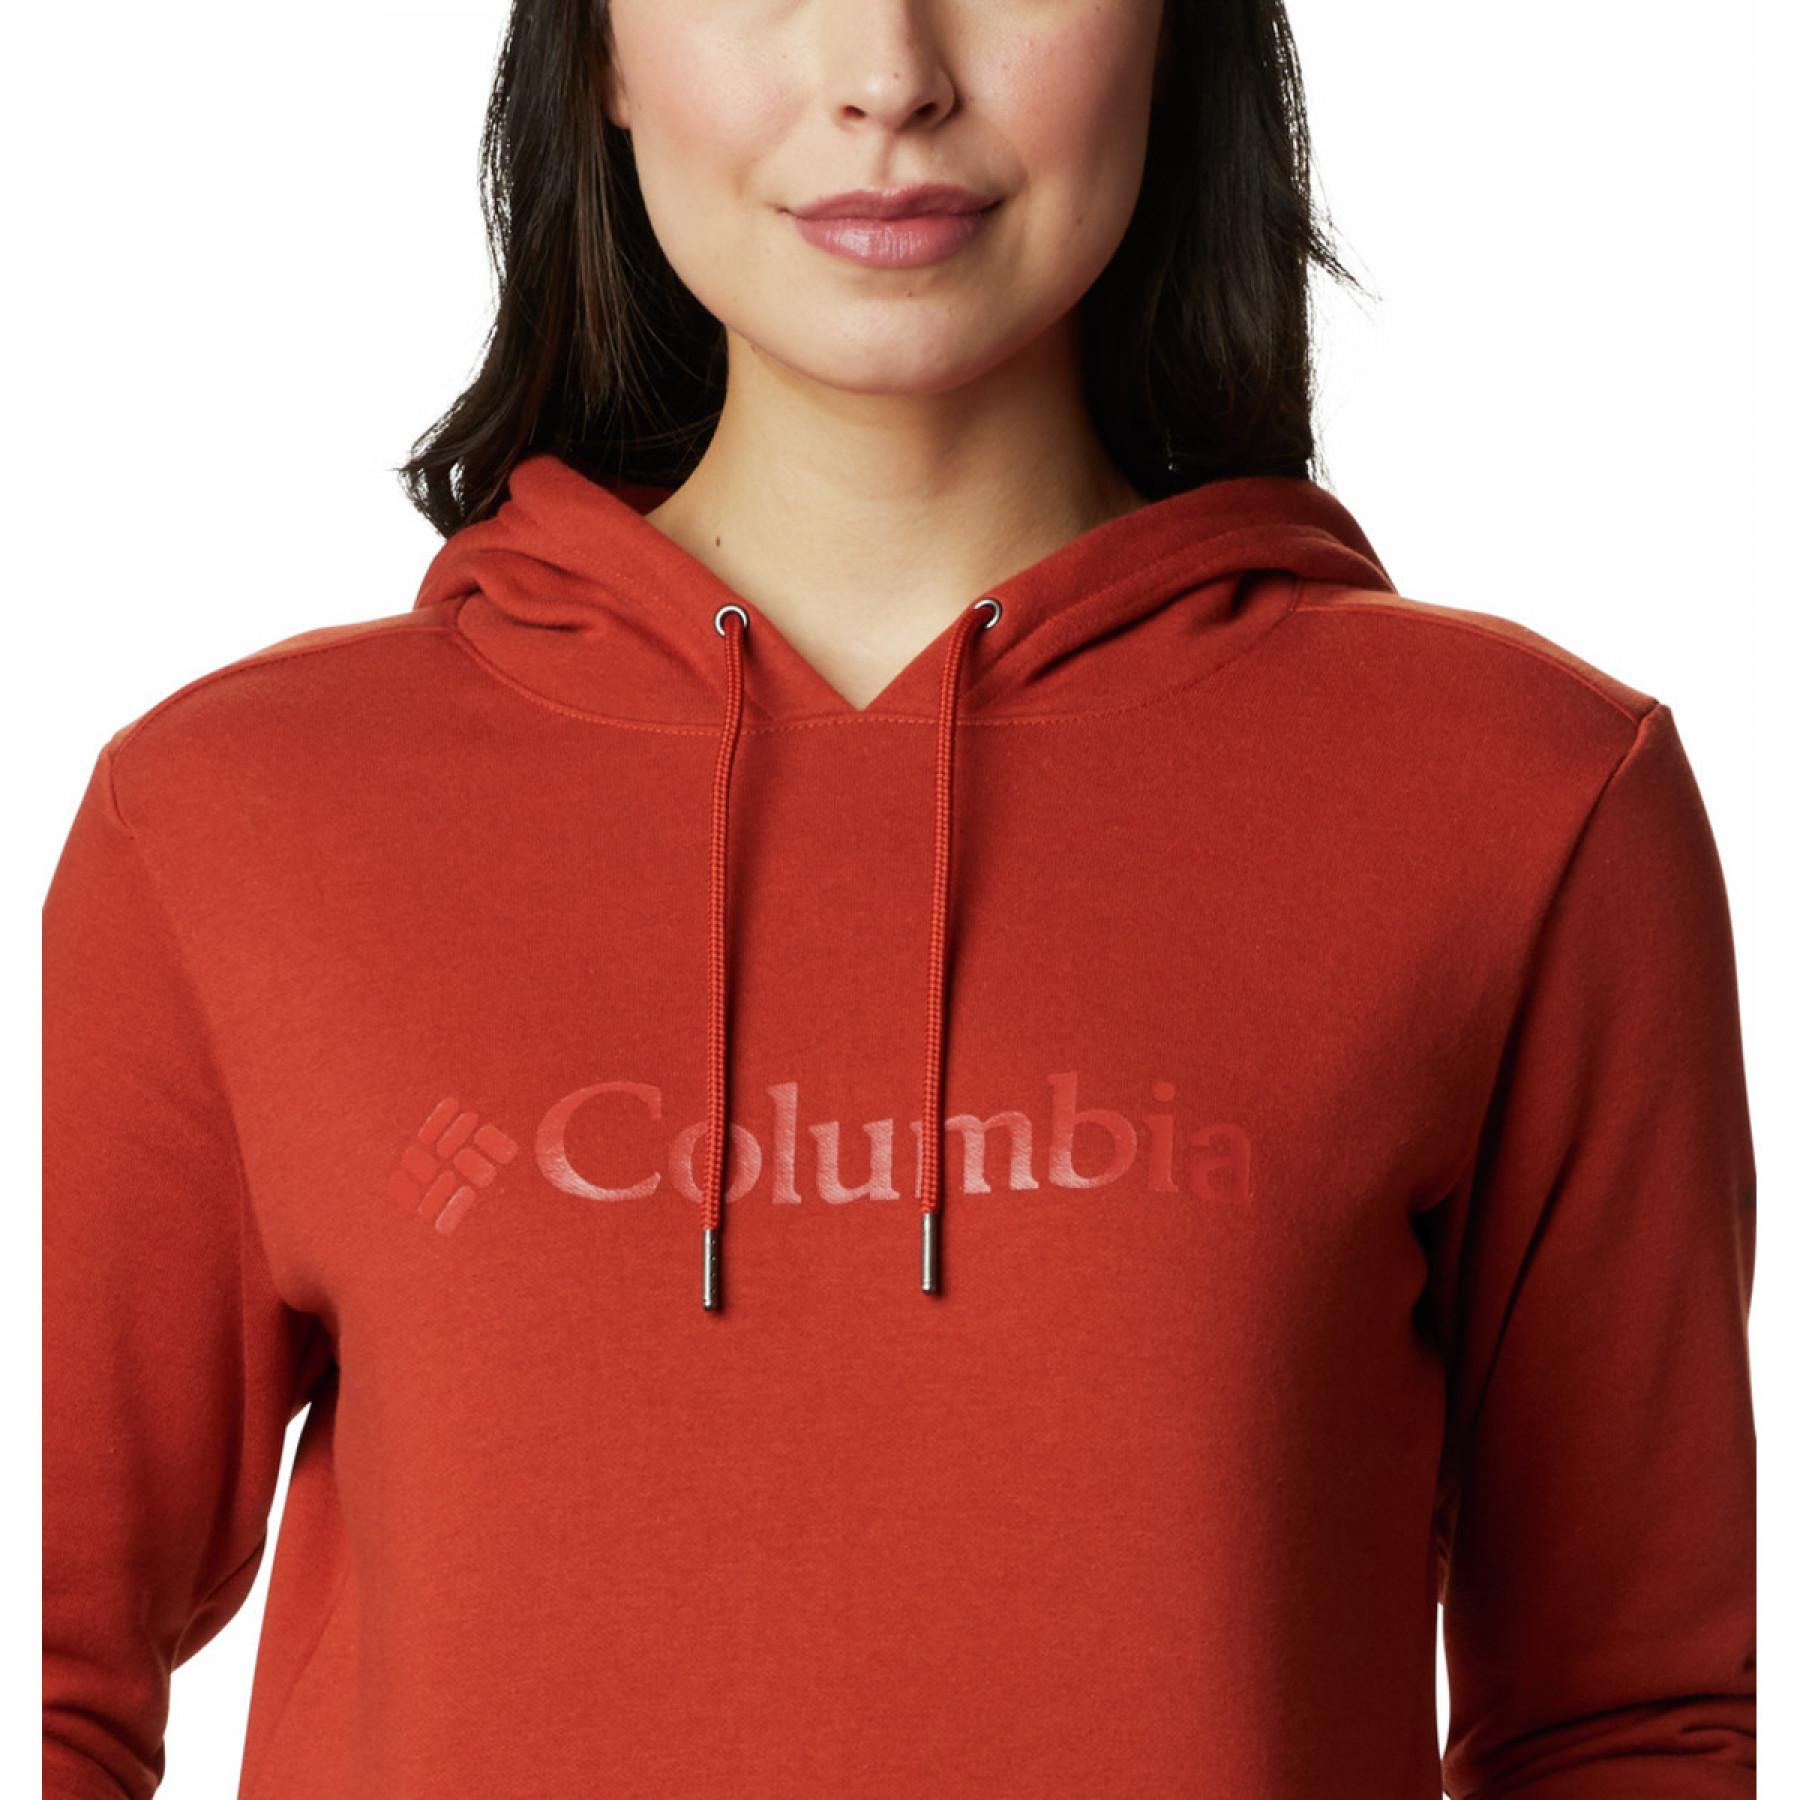 Sudadera con capucha para mujer Columbia Logo